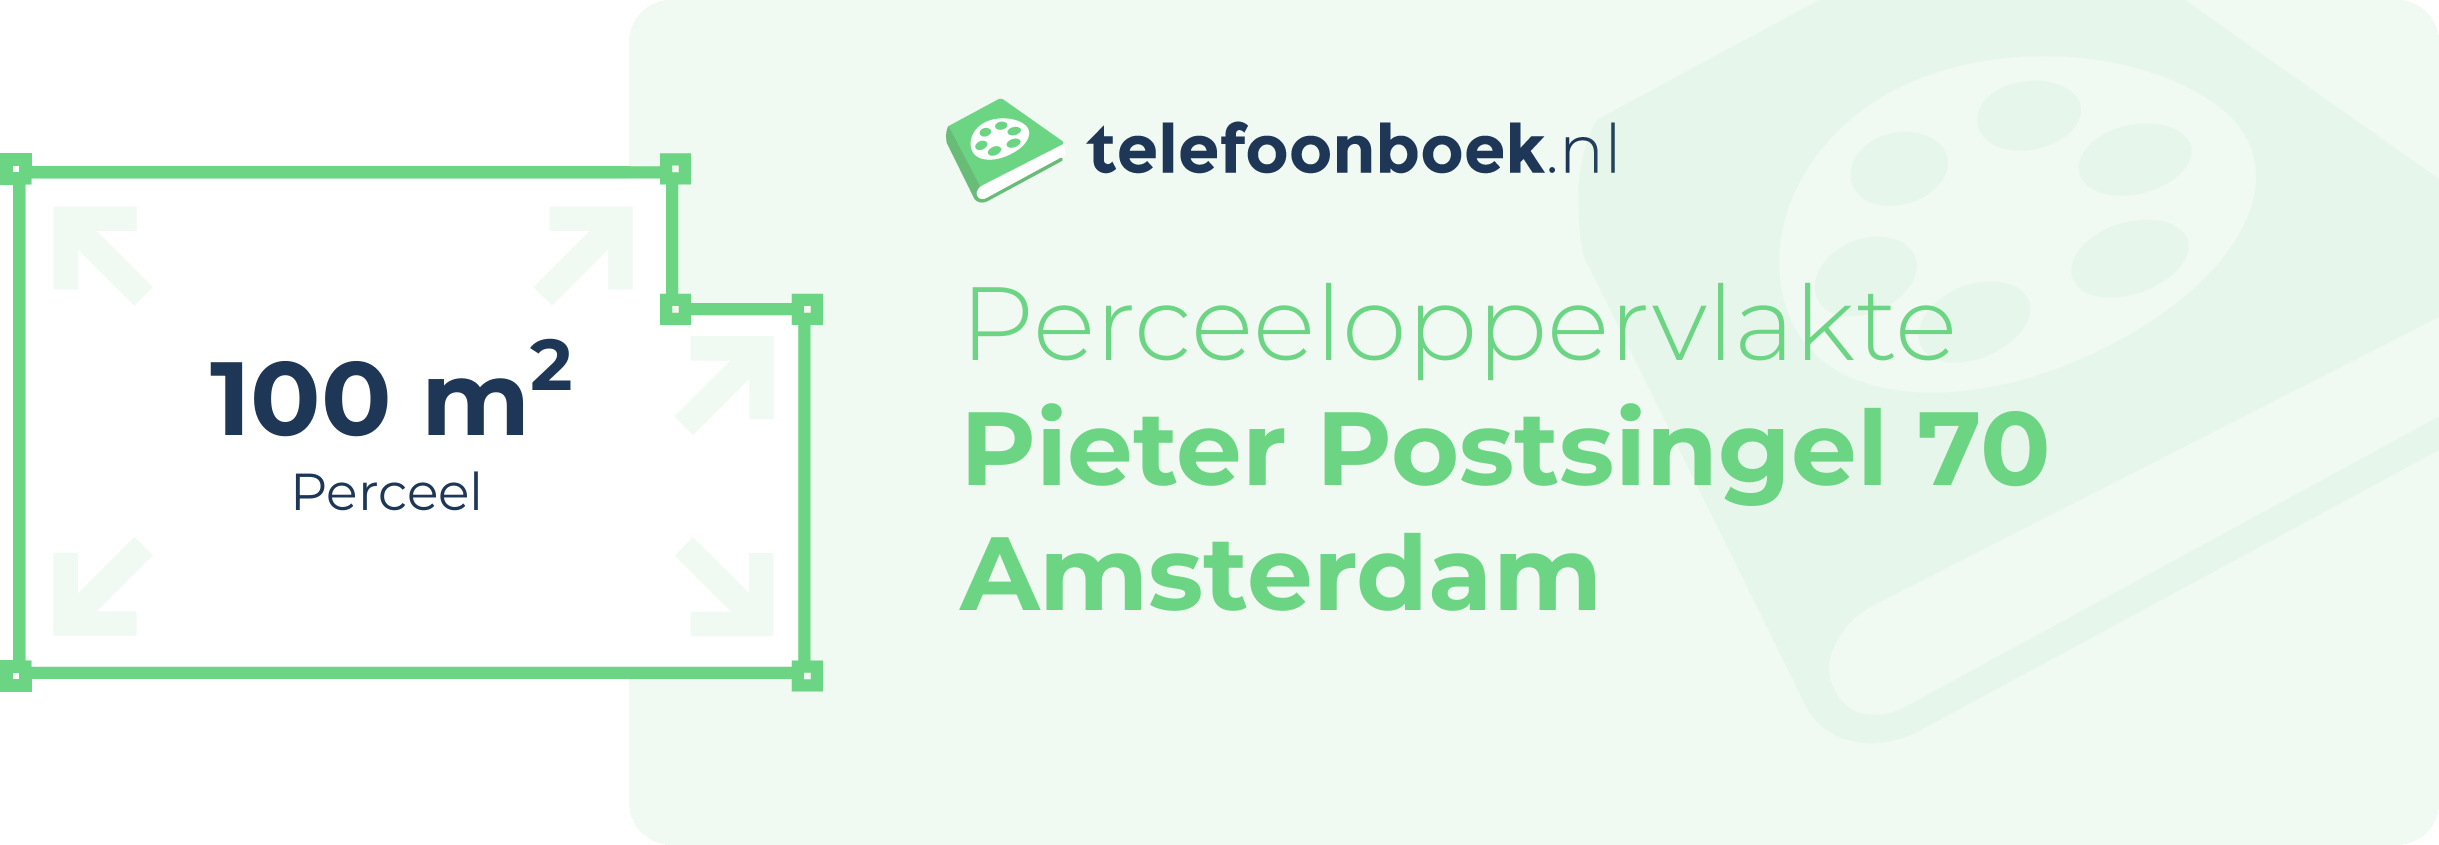 Perceeloppervlakte Pieter Postsingel 70 Amsterdam